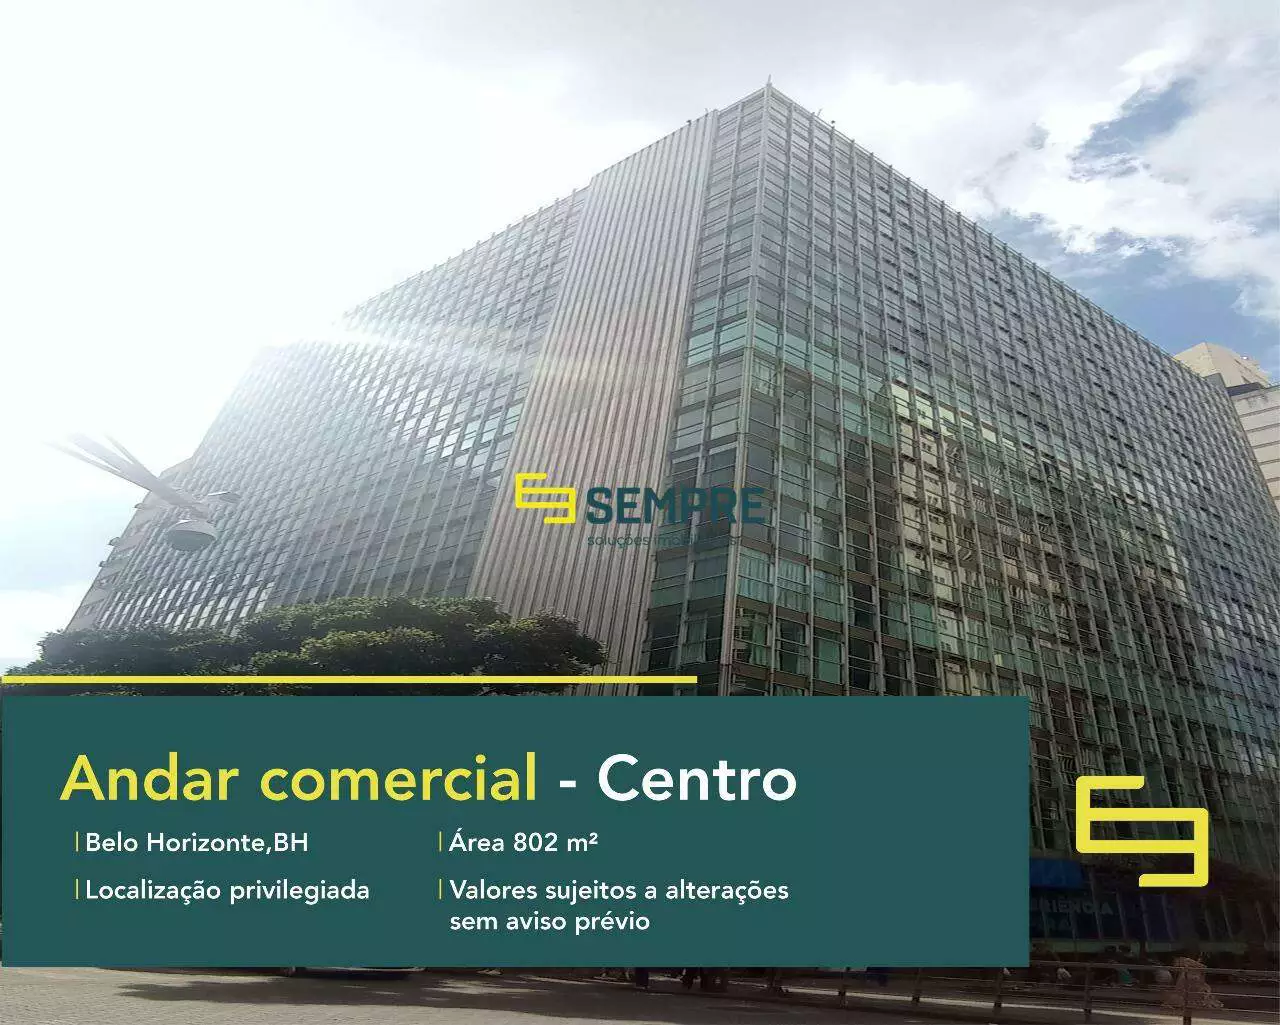 Prédio comercial no Edifício Vicente de Araujo para locação - BH, excelente localização. O ponto comercial conta com área de 802 m².